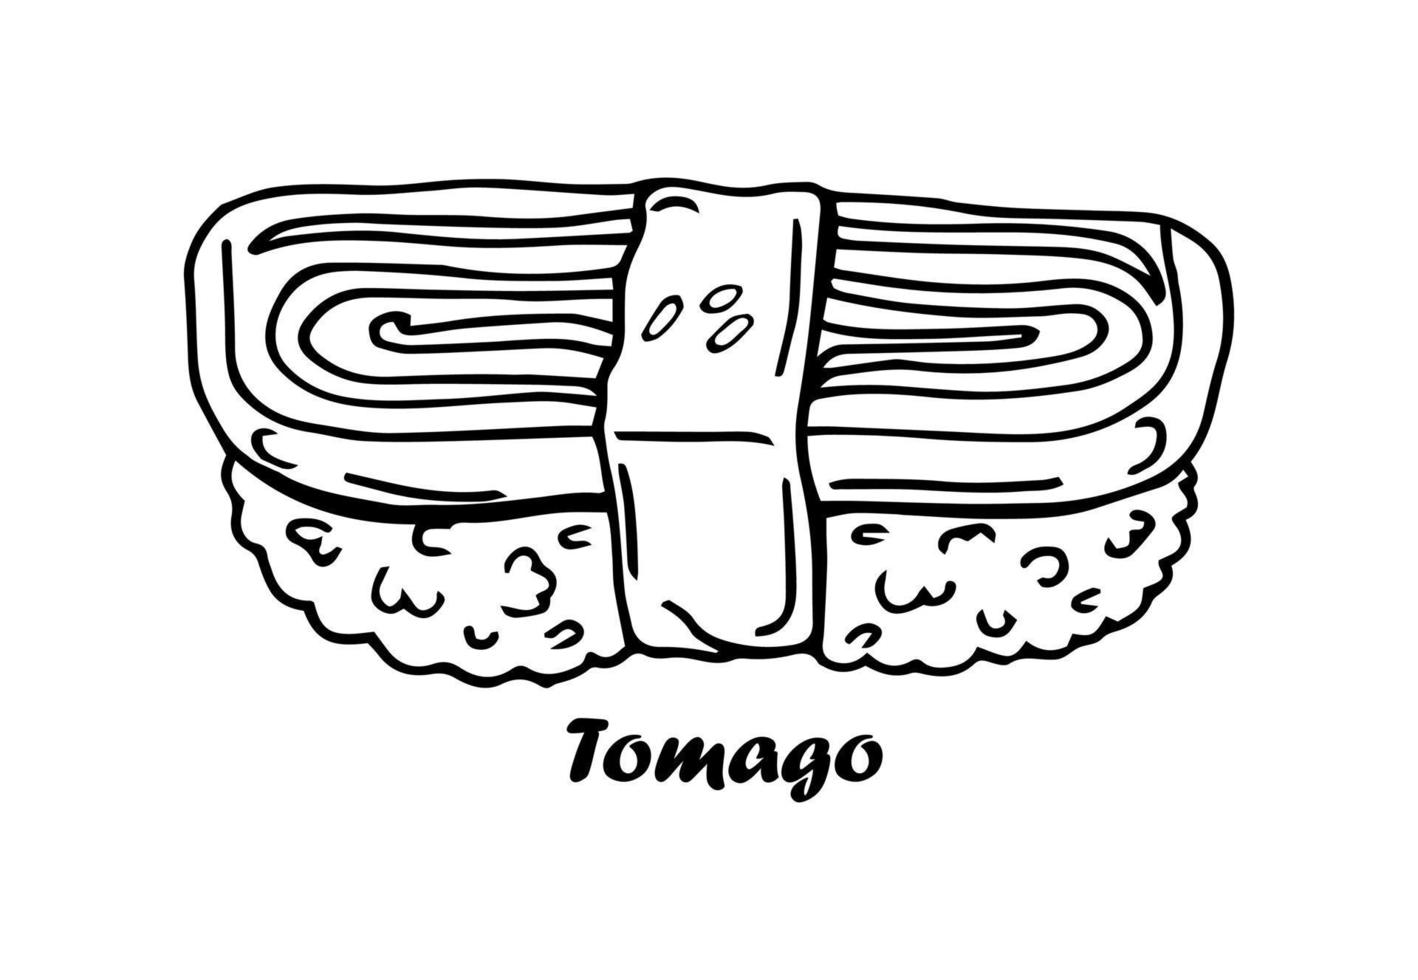 giapponese cibo. Sushi bar o tomago rotolo. mano disegnato inciso schizzo per menù. monocromatico stile. vettore illustrazioni